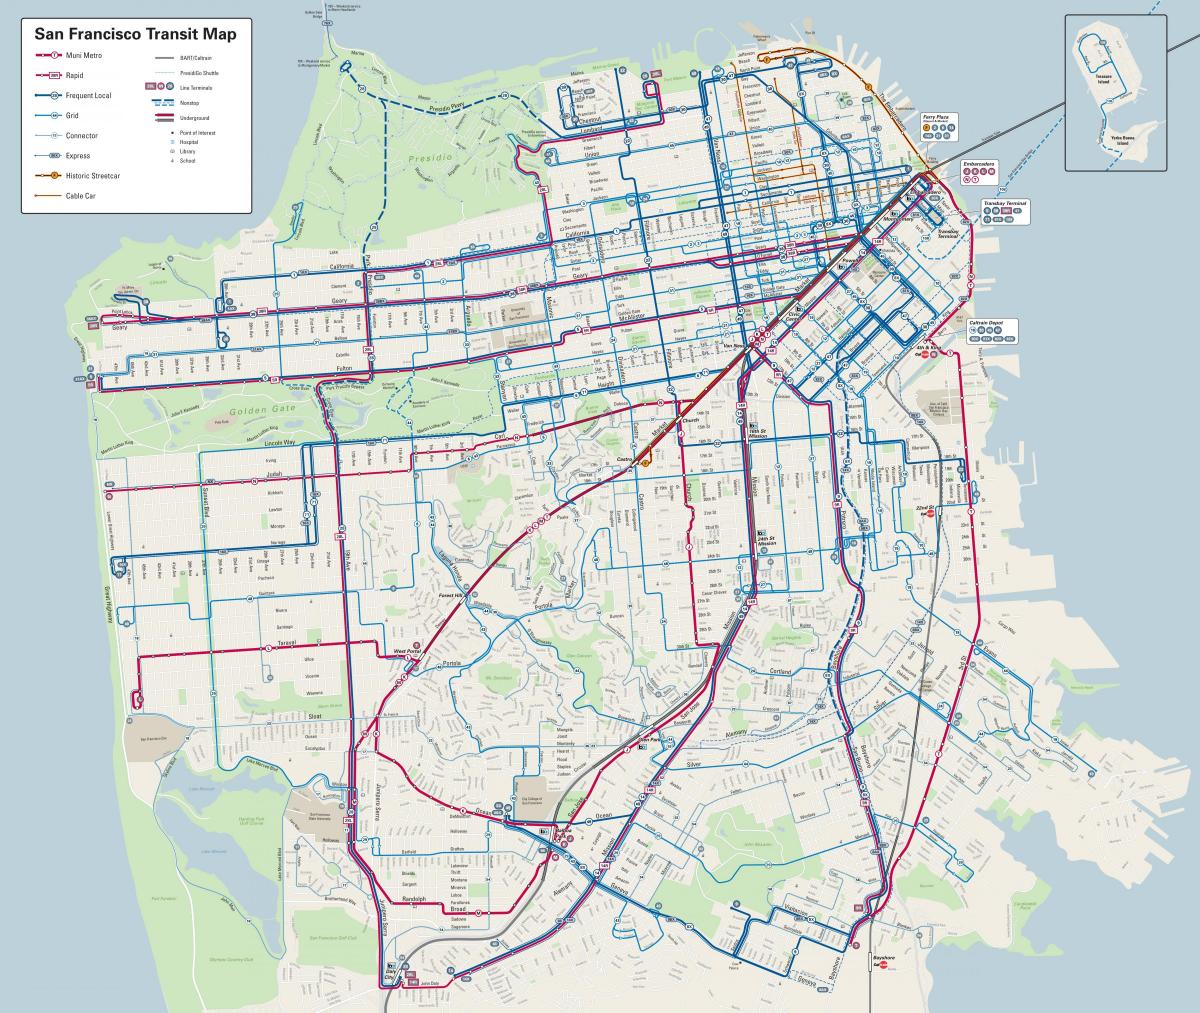 San Francisco bussiliinid kaart